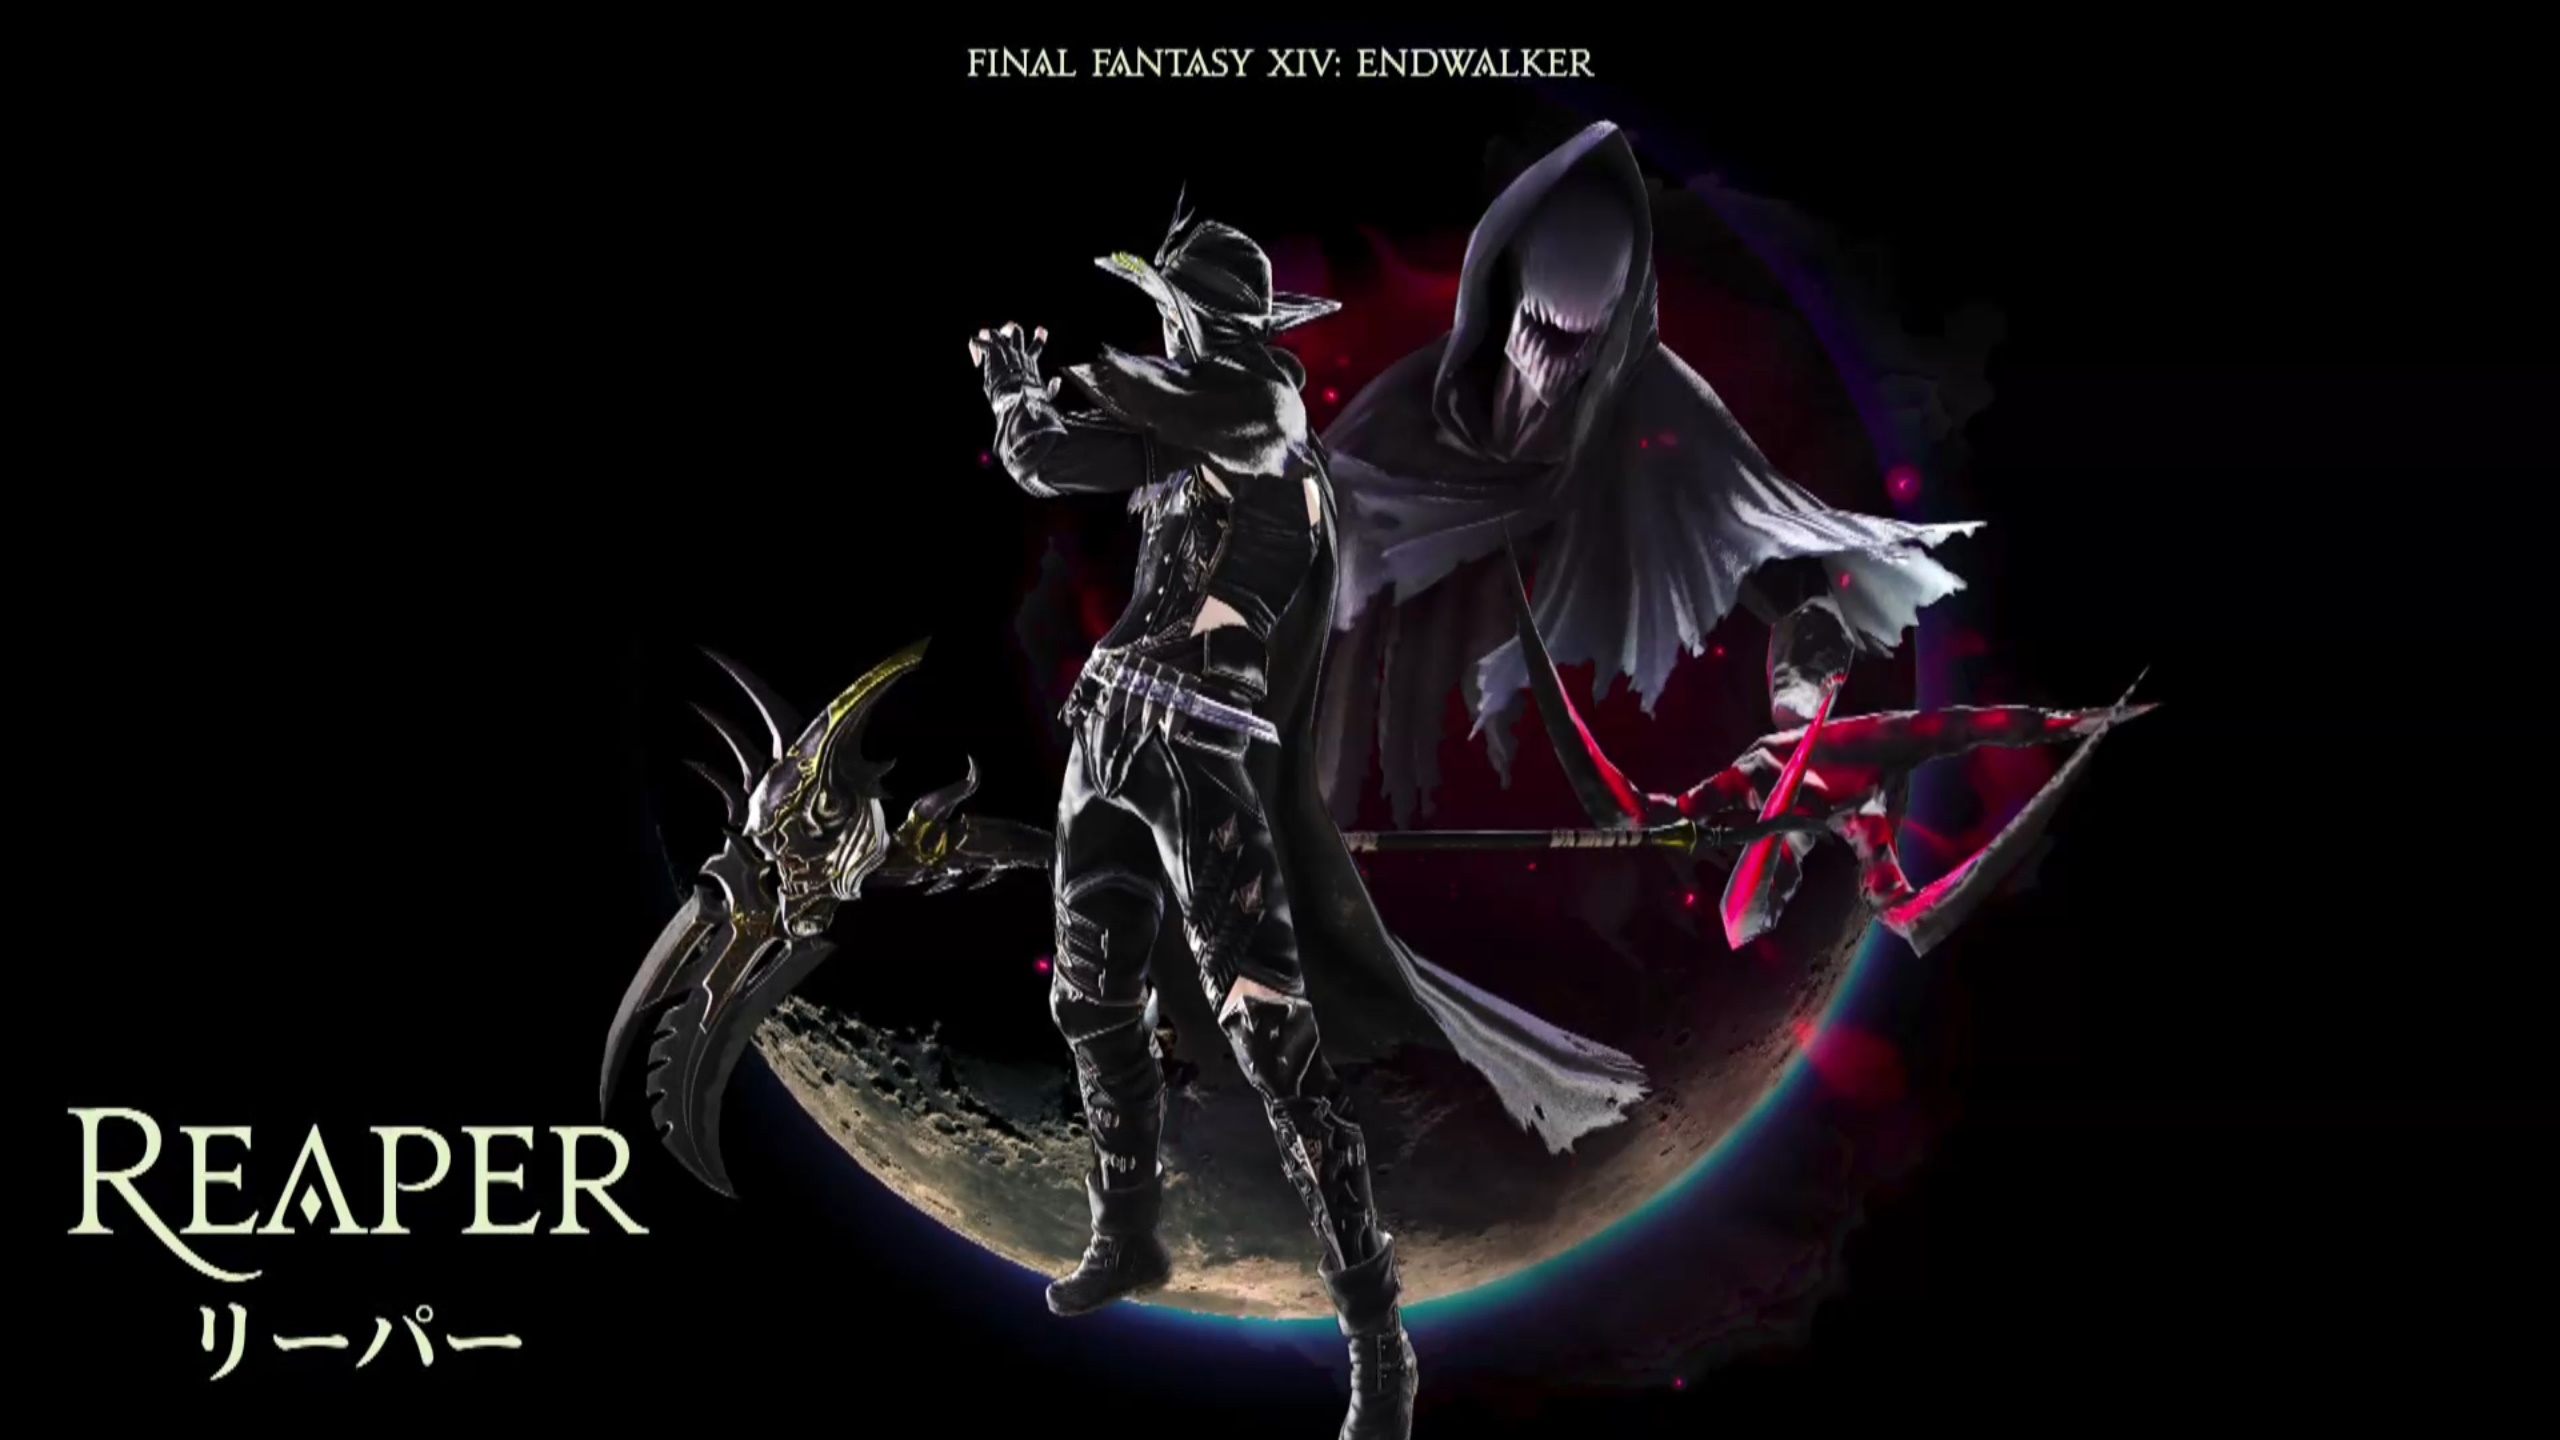 ff14 reaper quests